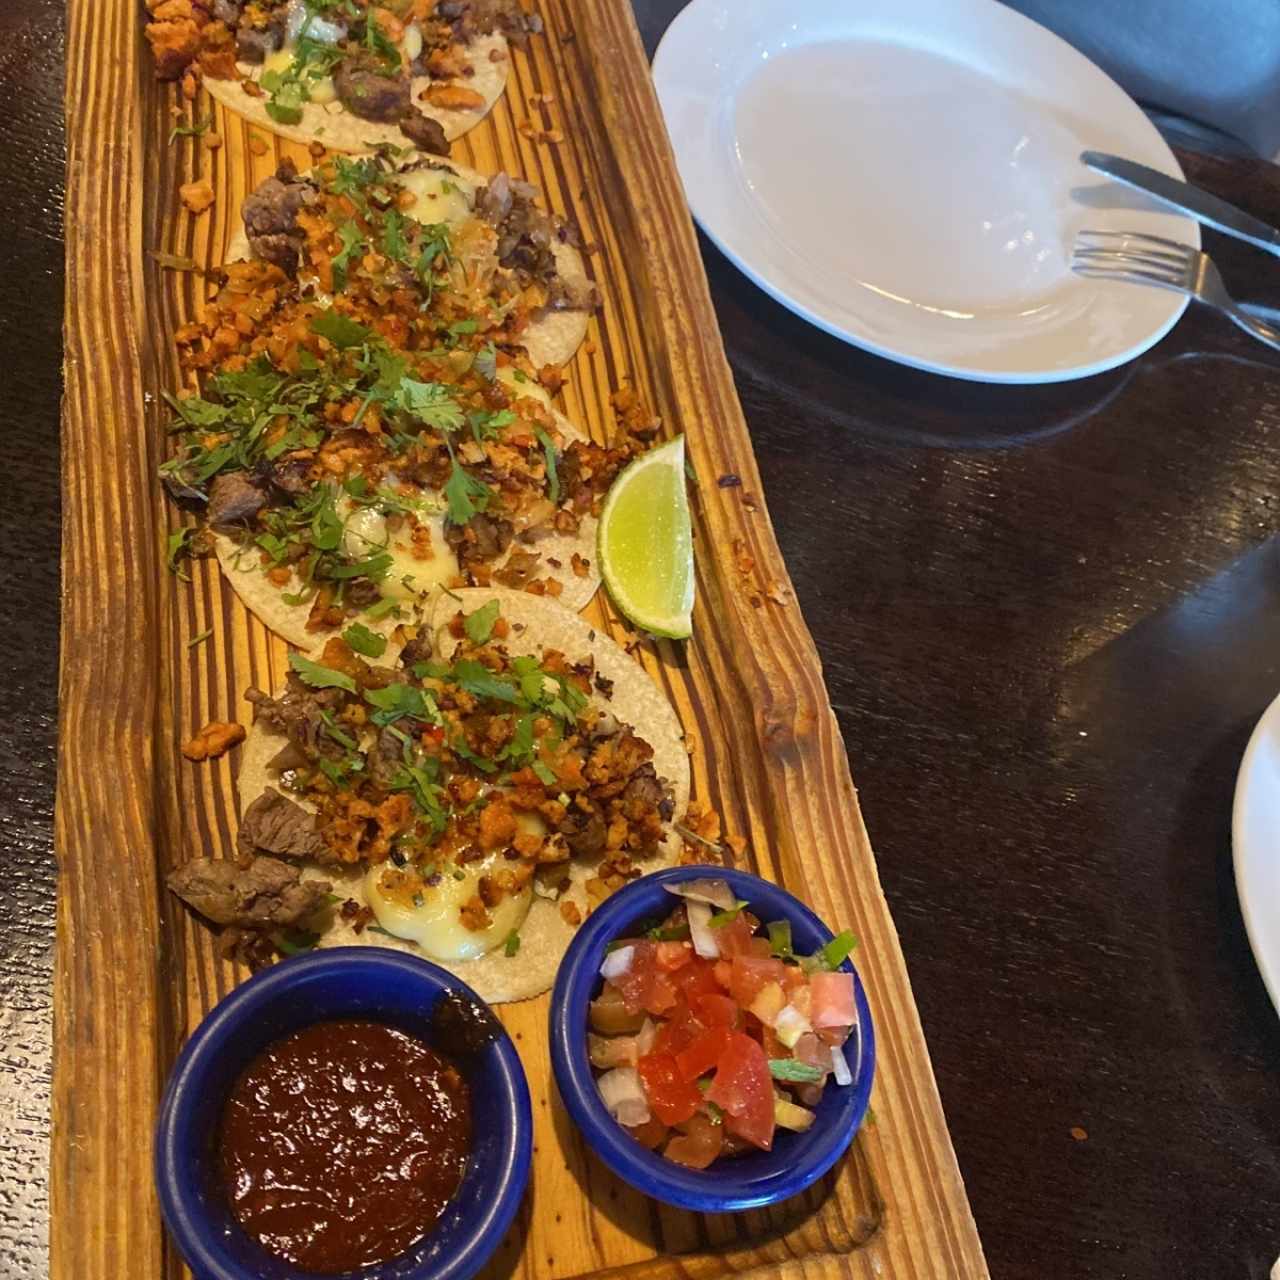 Tacos - Campechano